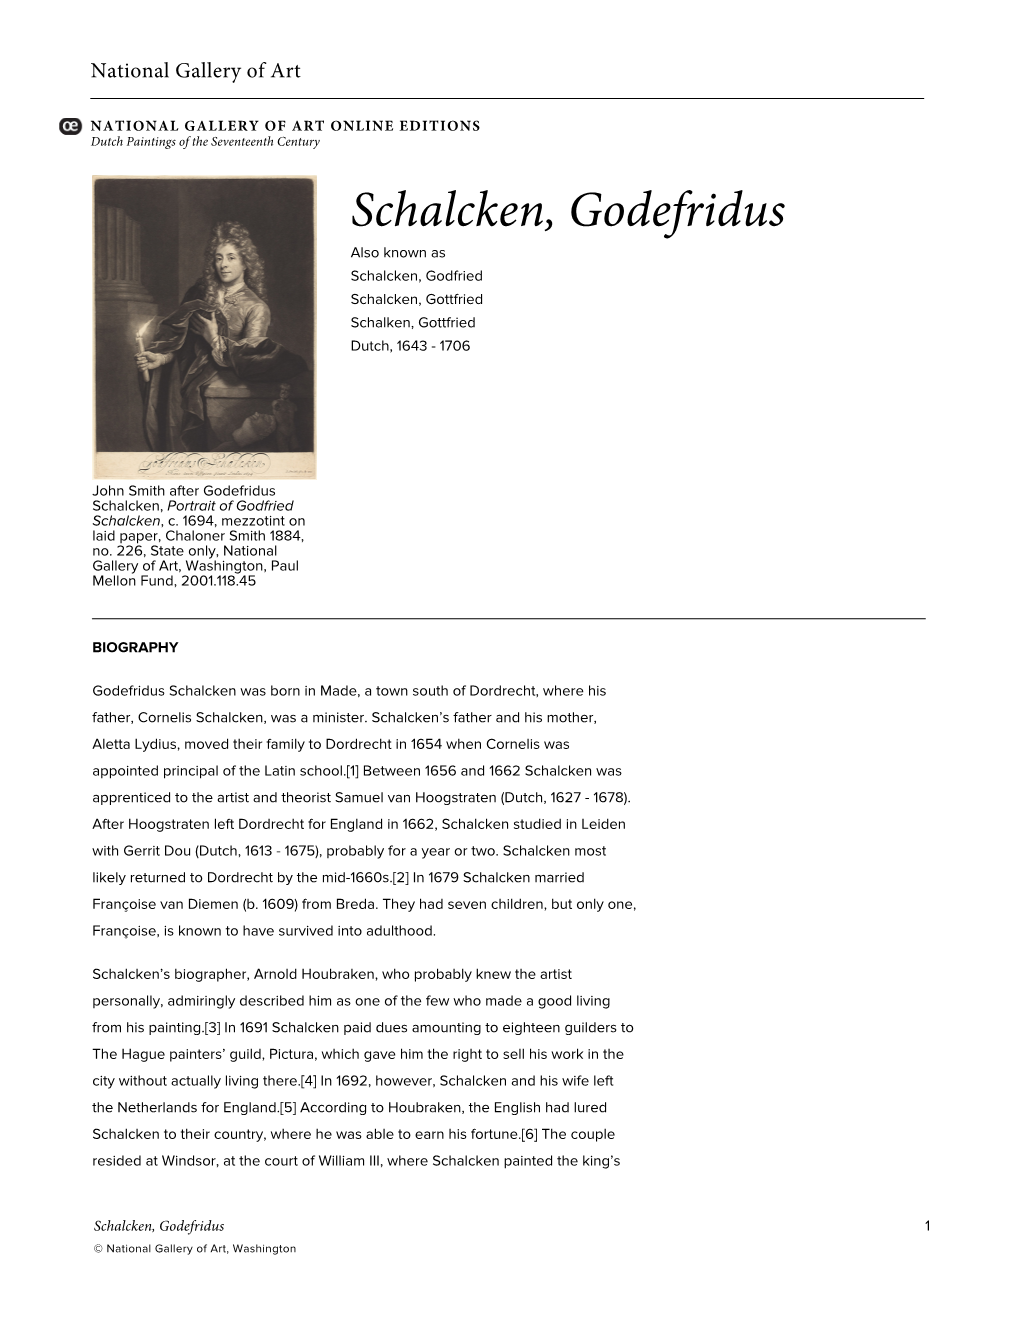 Schalcken, Godefridus Also Known As Schalcken, Godfried Schalcken, Gottfried Schalken, Gottfried Dutch, 1643 - 1706